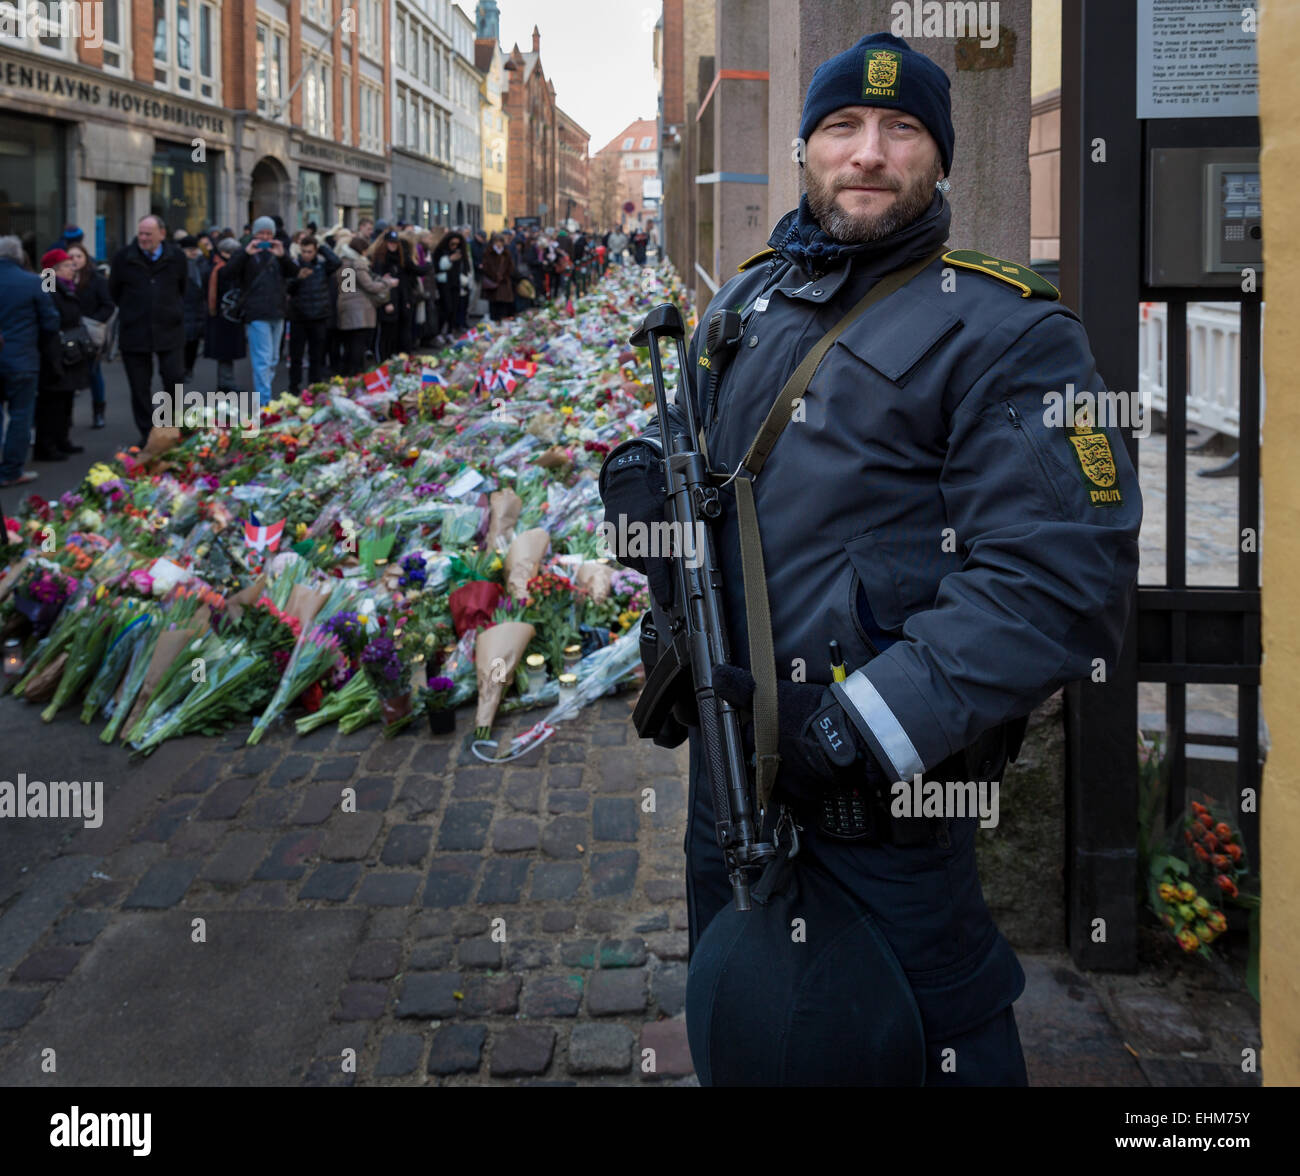 Porträt eines Polizisten, der die jüdische Synagoge in Kopenhagen nach dem Terroranschlag im Februar 2015 bewacht, Kopenhagen, Dänemark Stockfoto